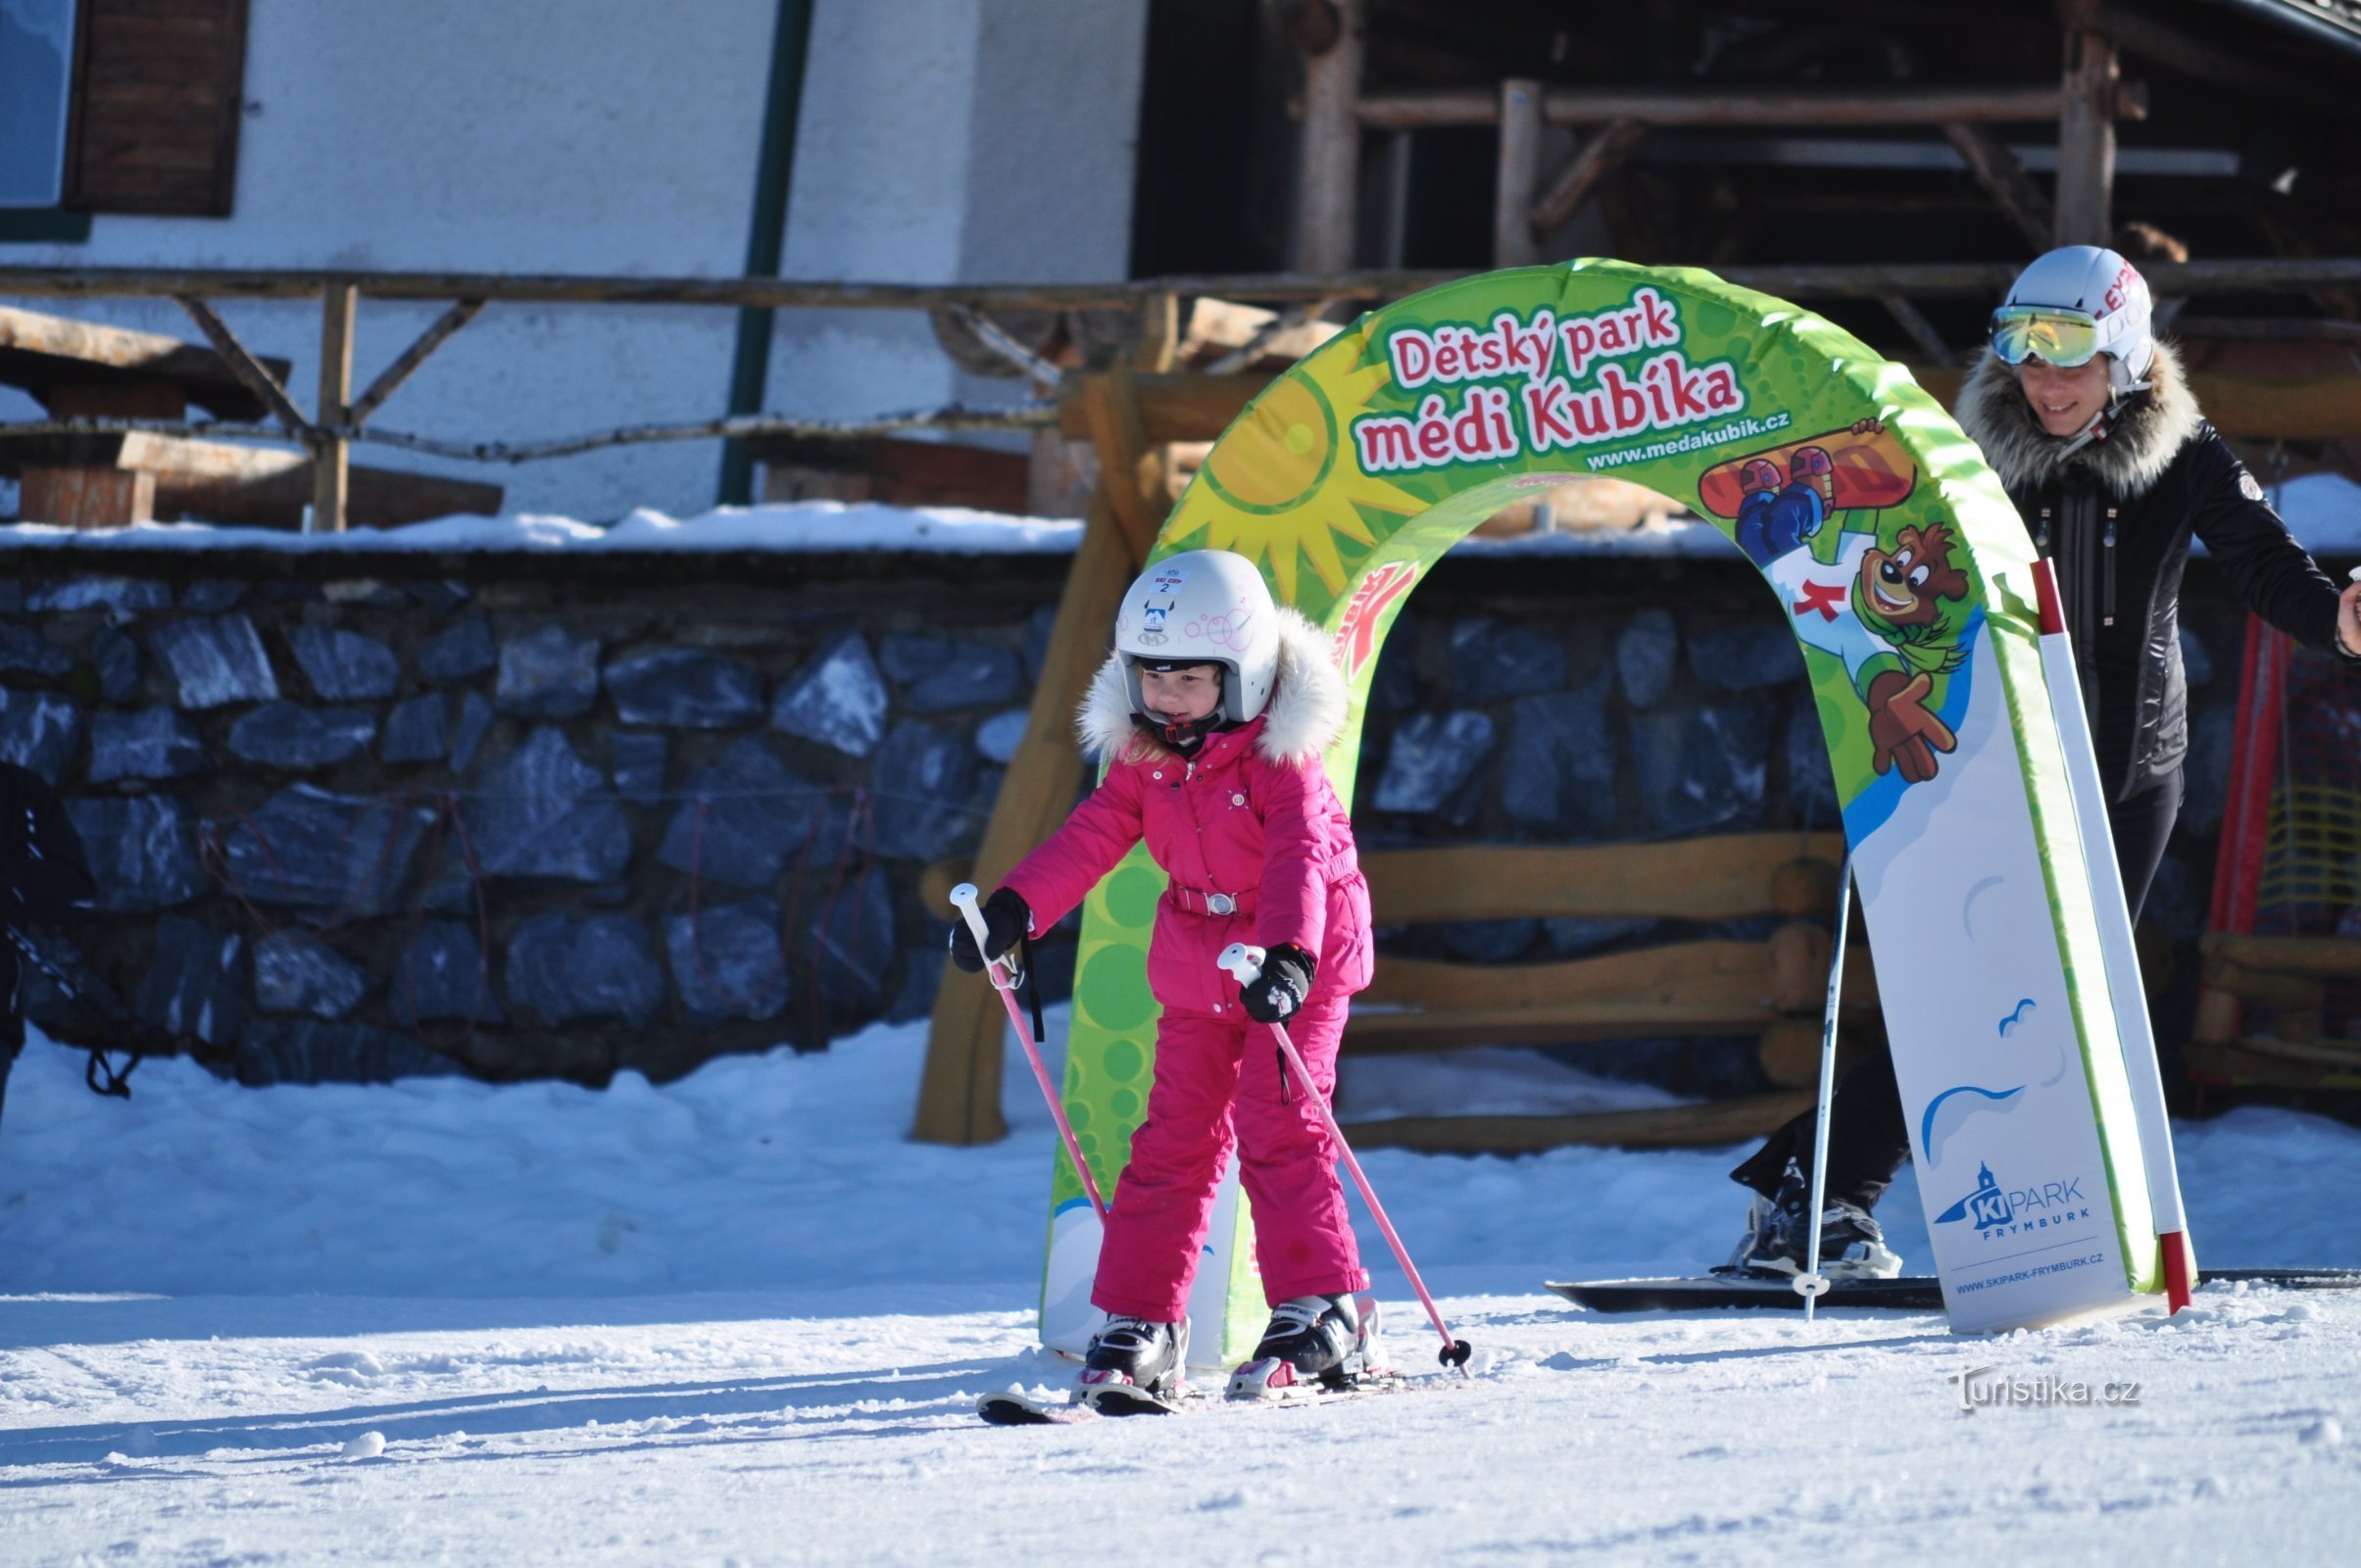 Τα στοιχεία για σκι είναι το καμάρι του παιδικού μας πάρκου